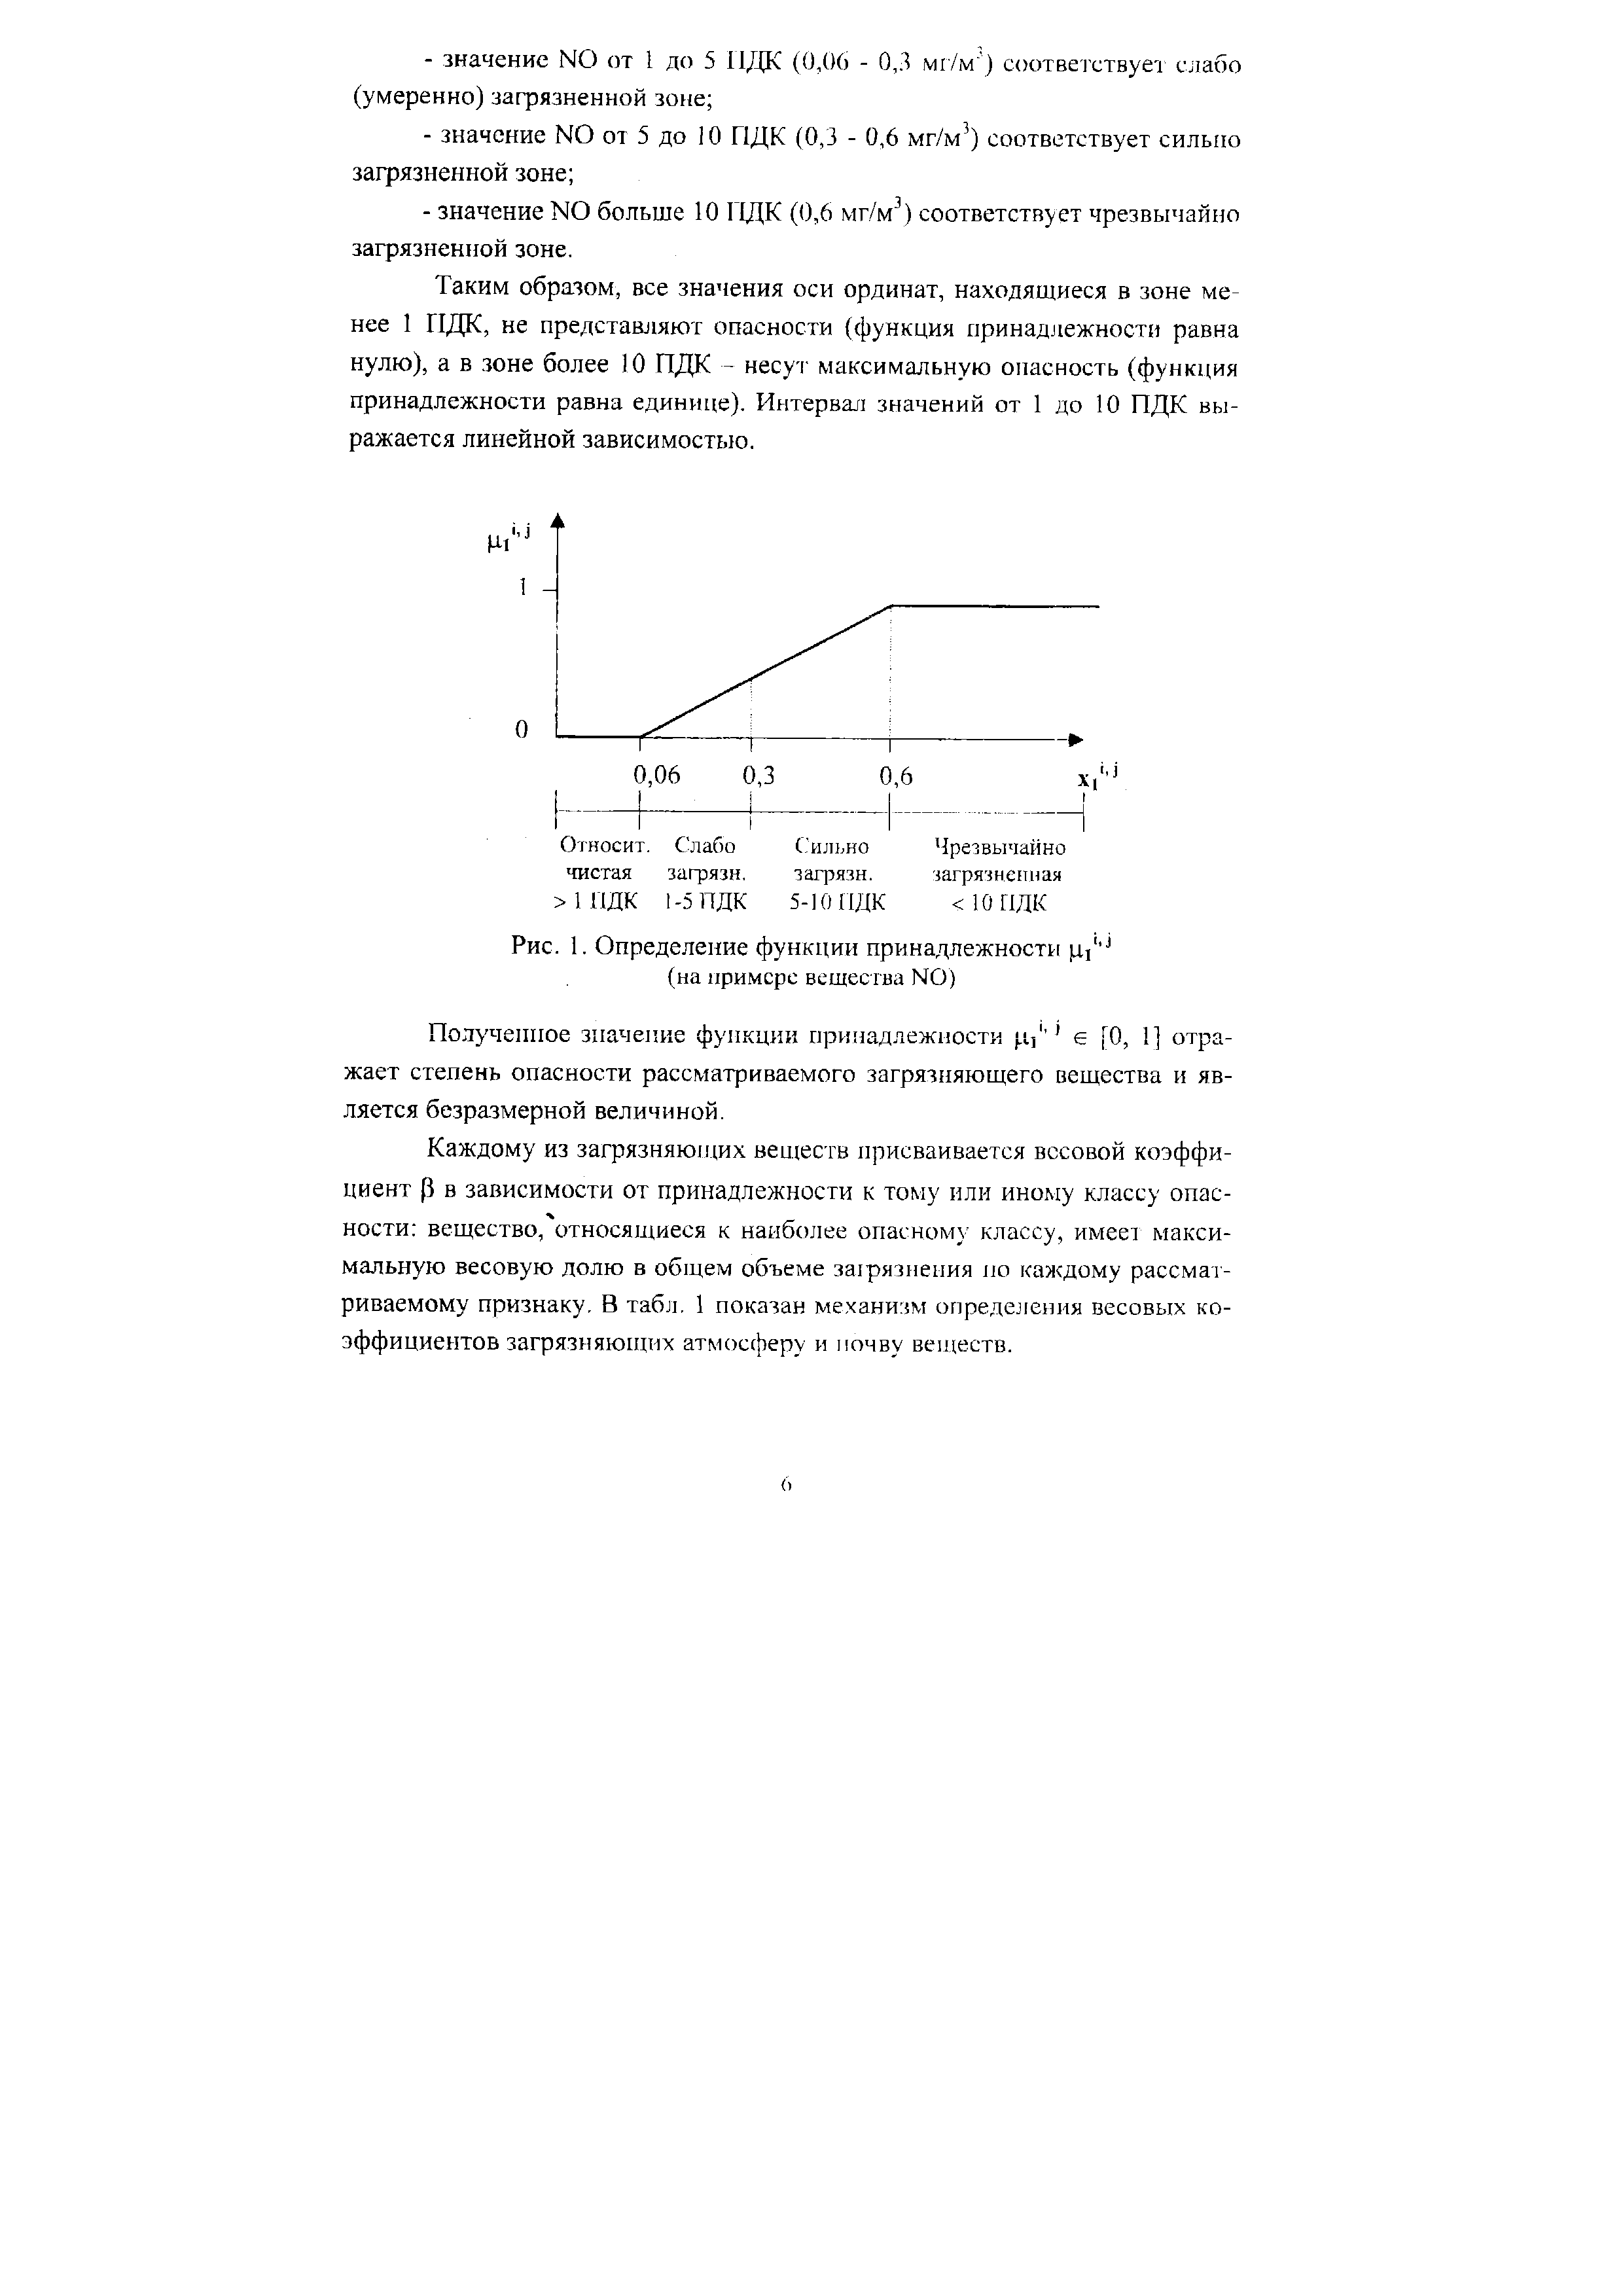 Рис. 1. Определение функции принадлежности цУ° (на примере вещества N0)
